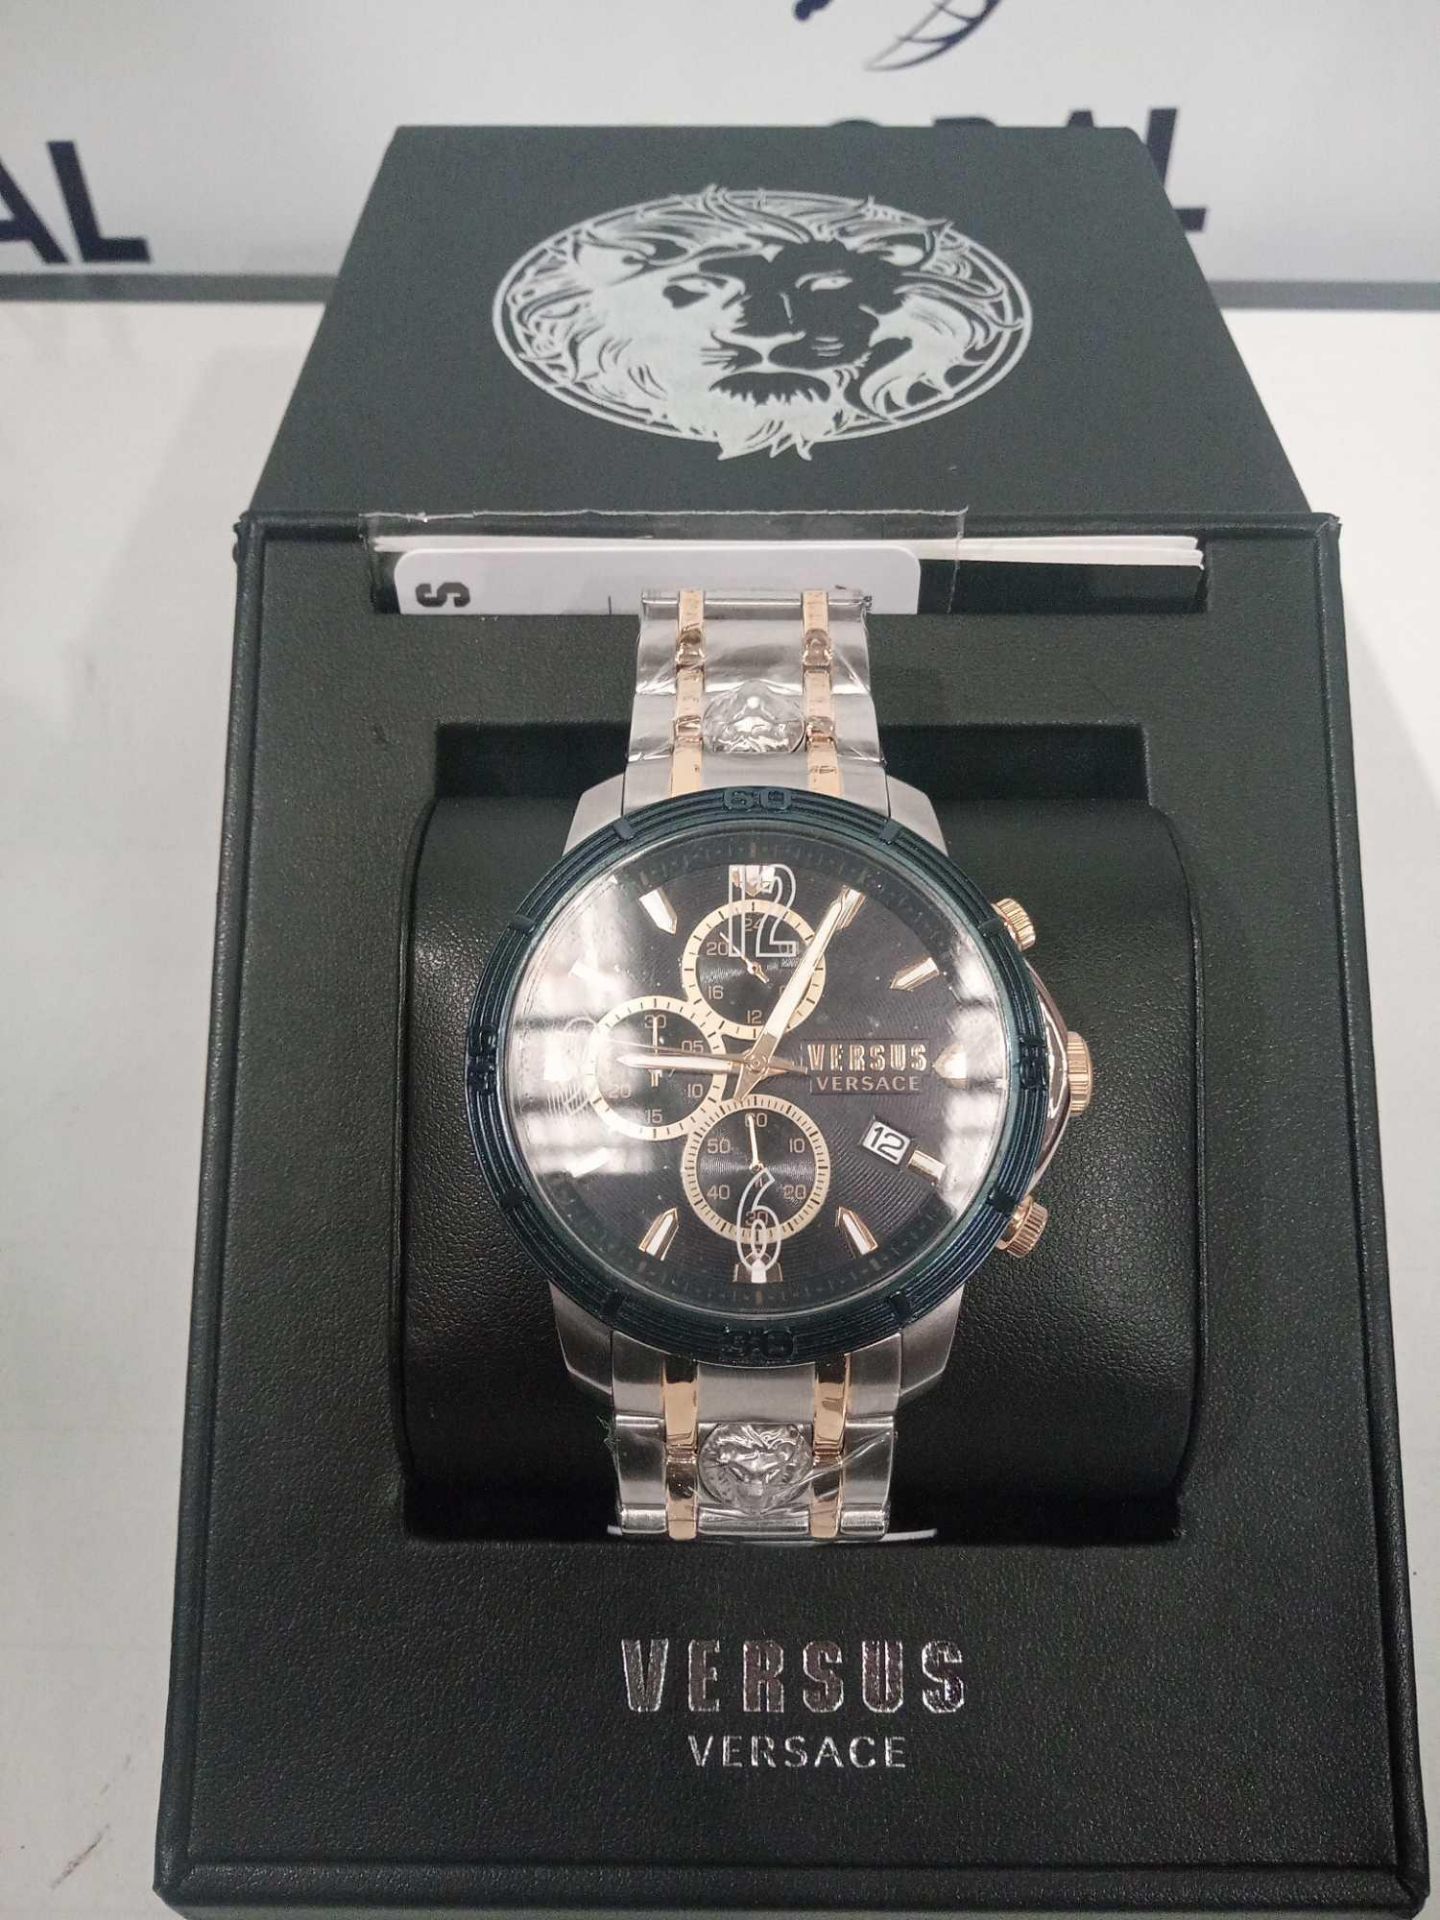 RRP £180 Boxed Versace Versus Men's Wrist Watch Grade A - Image 3 of 4